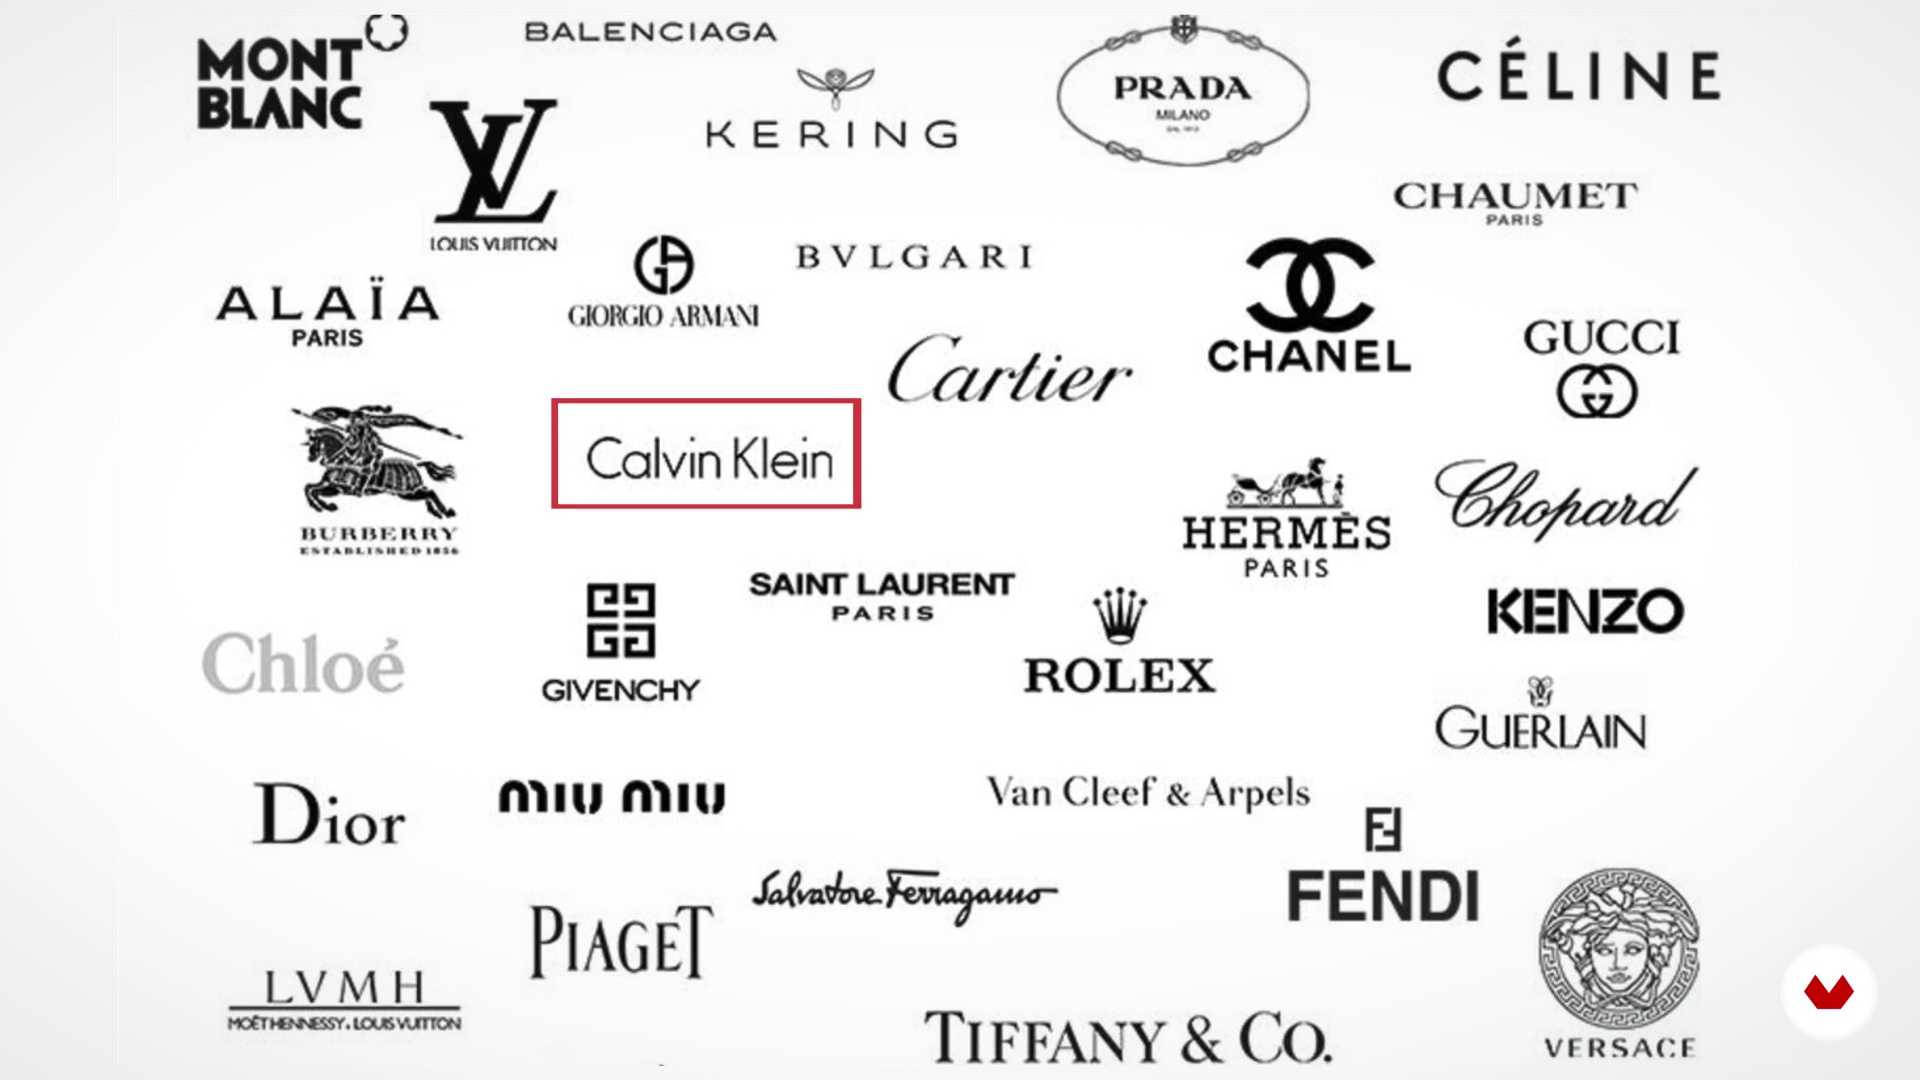 Фирма одежды и обуви. Бренды одежды. Логотипы брендов одежды. Логотипы люксовых брендов одежды. Известные бренды.